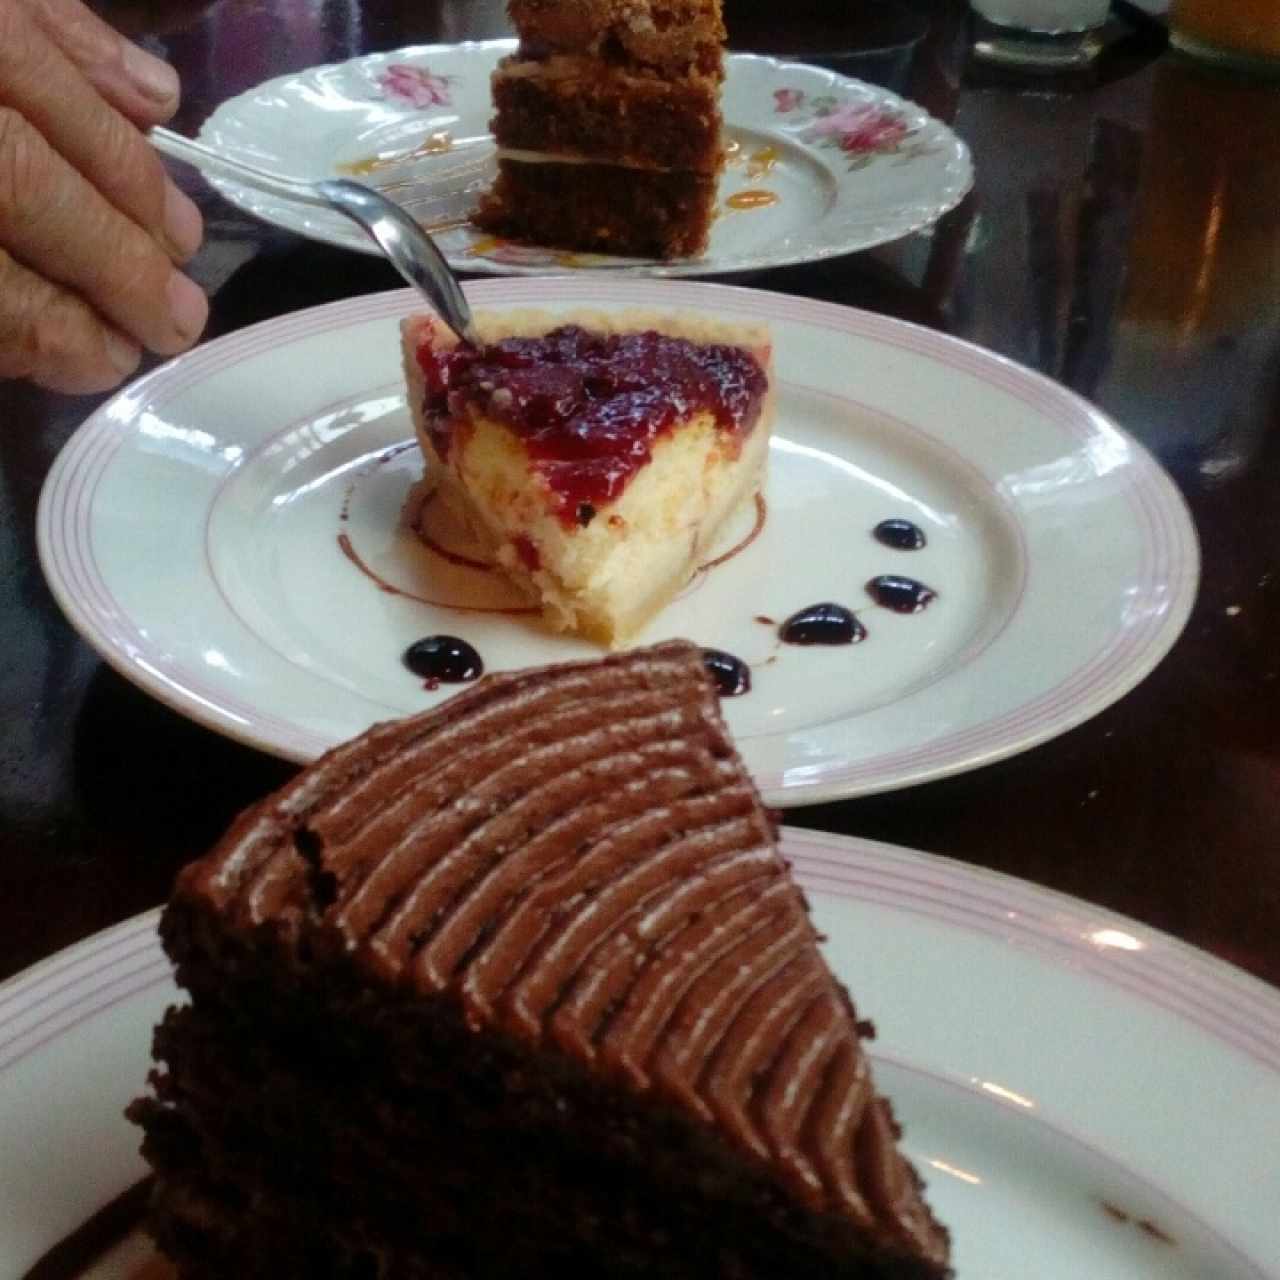 torta de zanahoria, pastel alemán y torta americana de chocolate